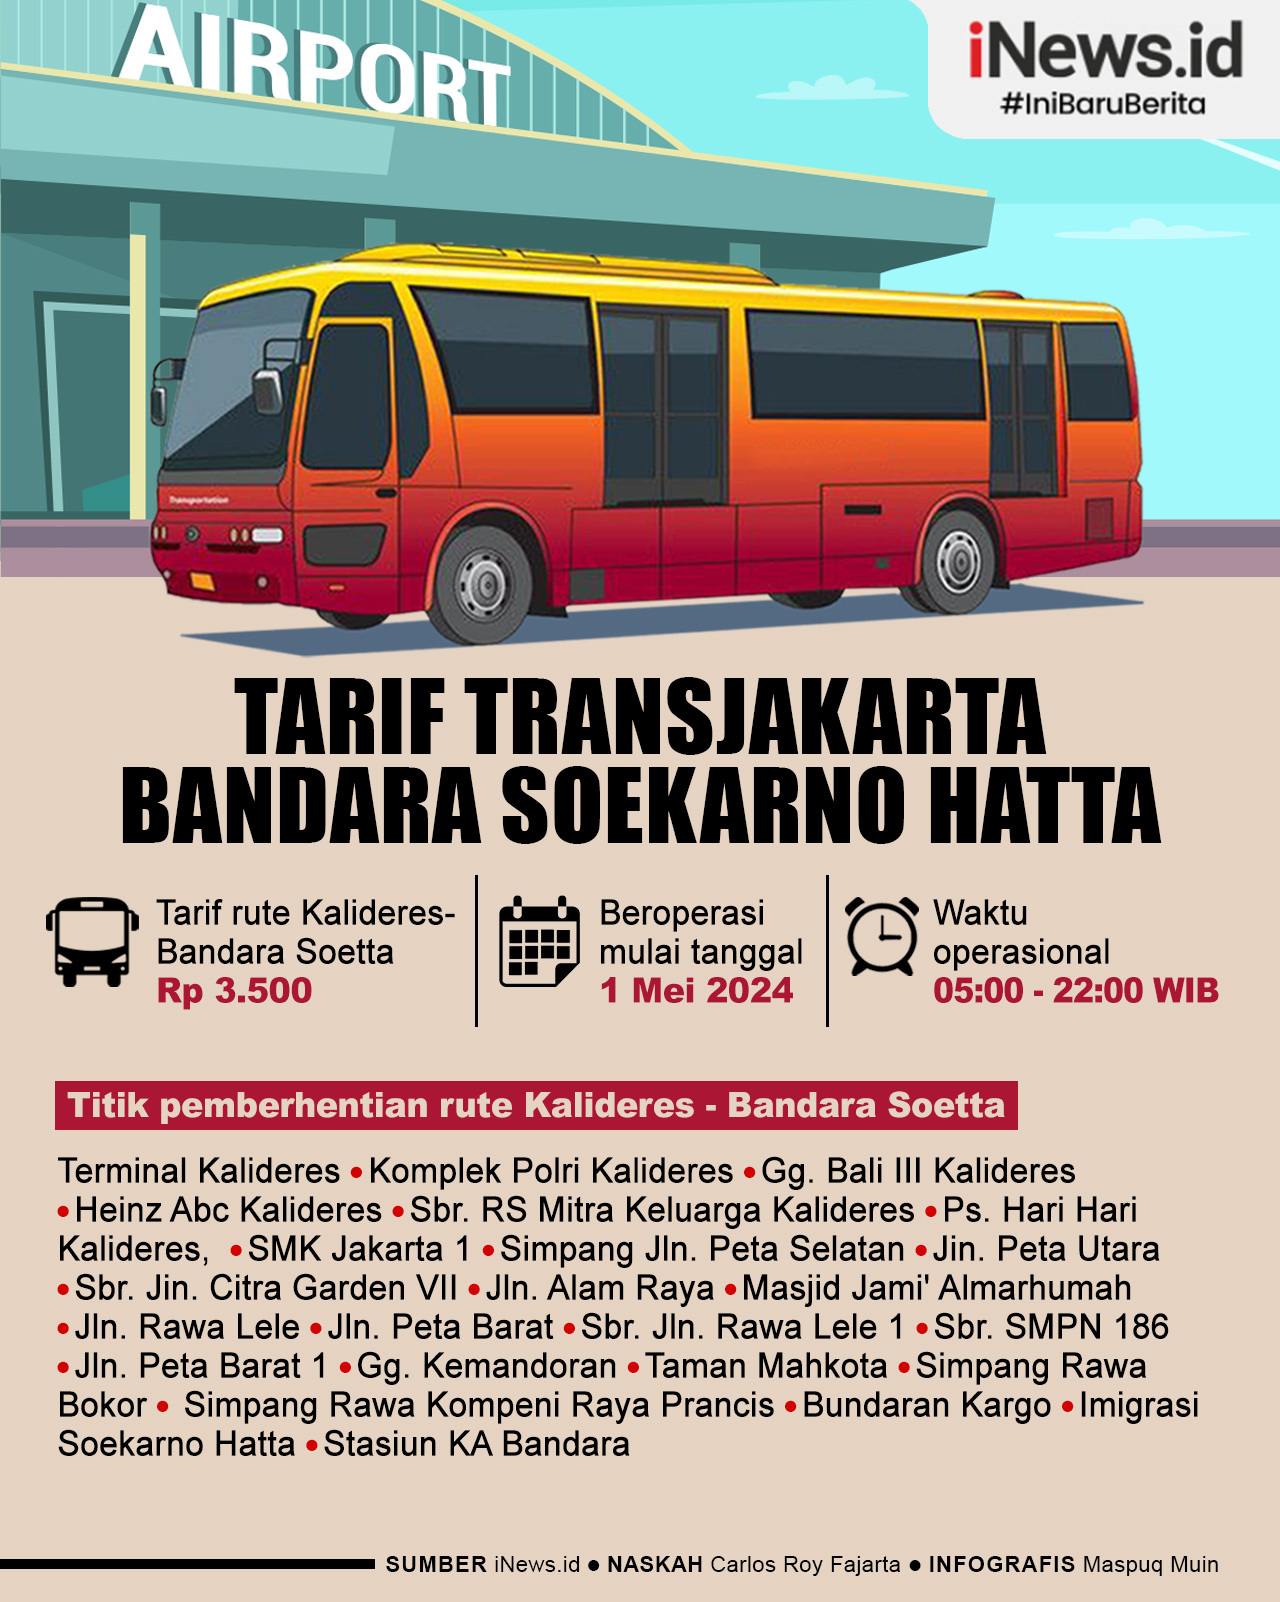 Infografis Tarif Transjakarta Rute Bandara Soekarno Hatta Cuma Rp3.500 